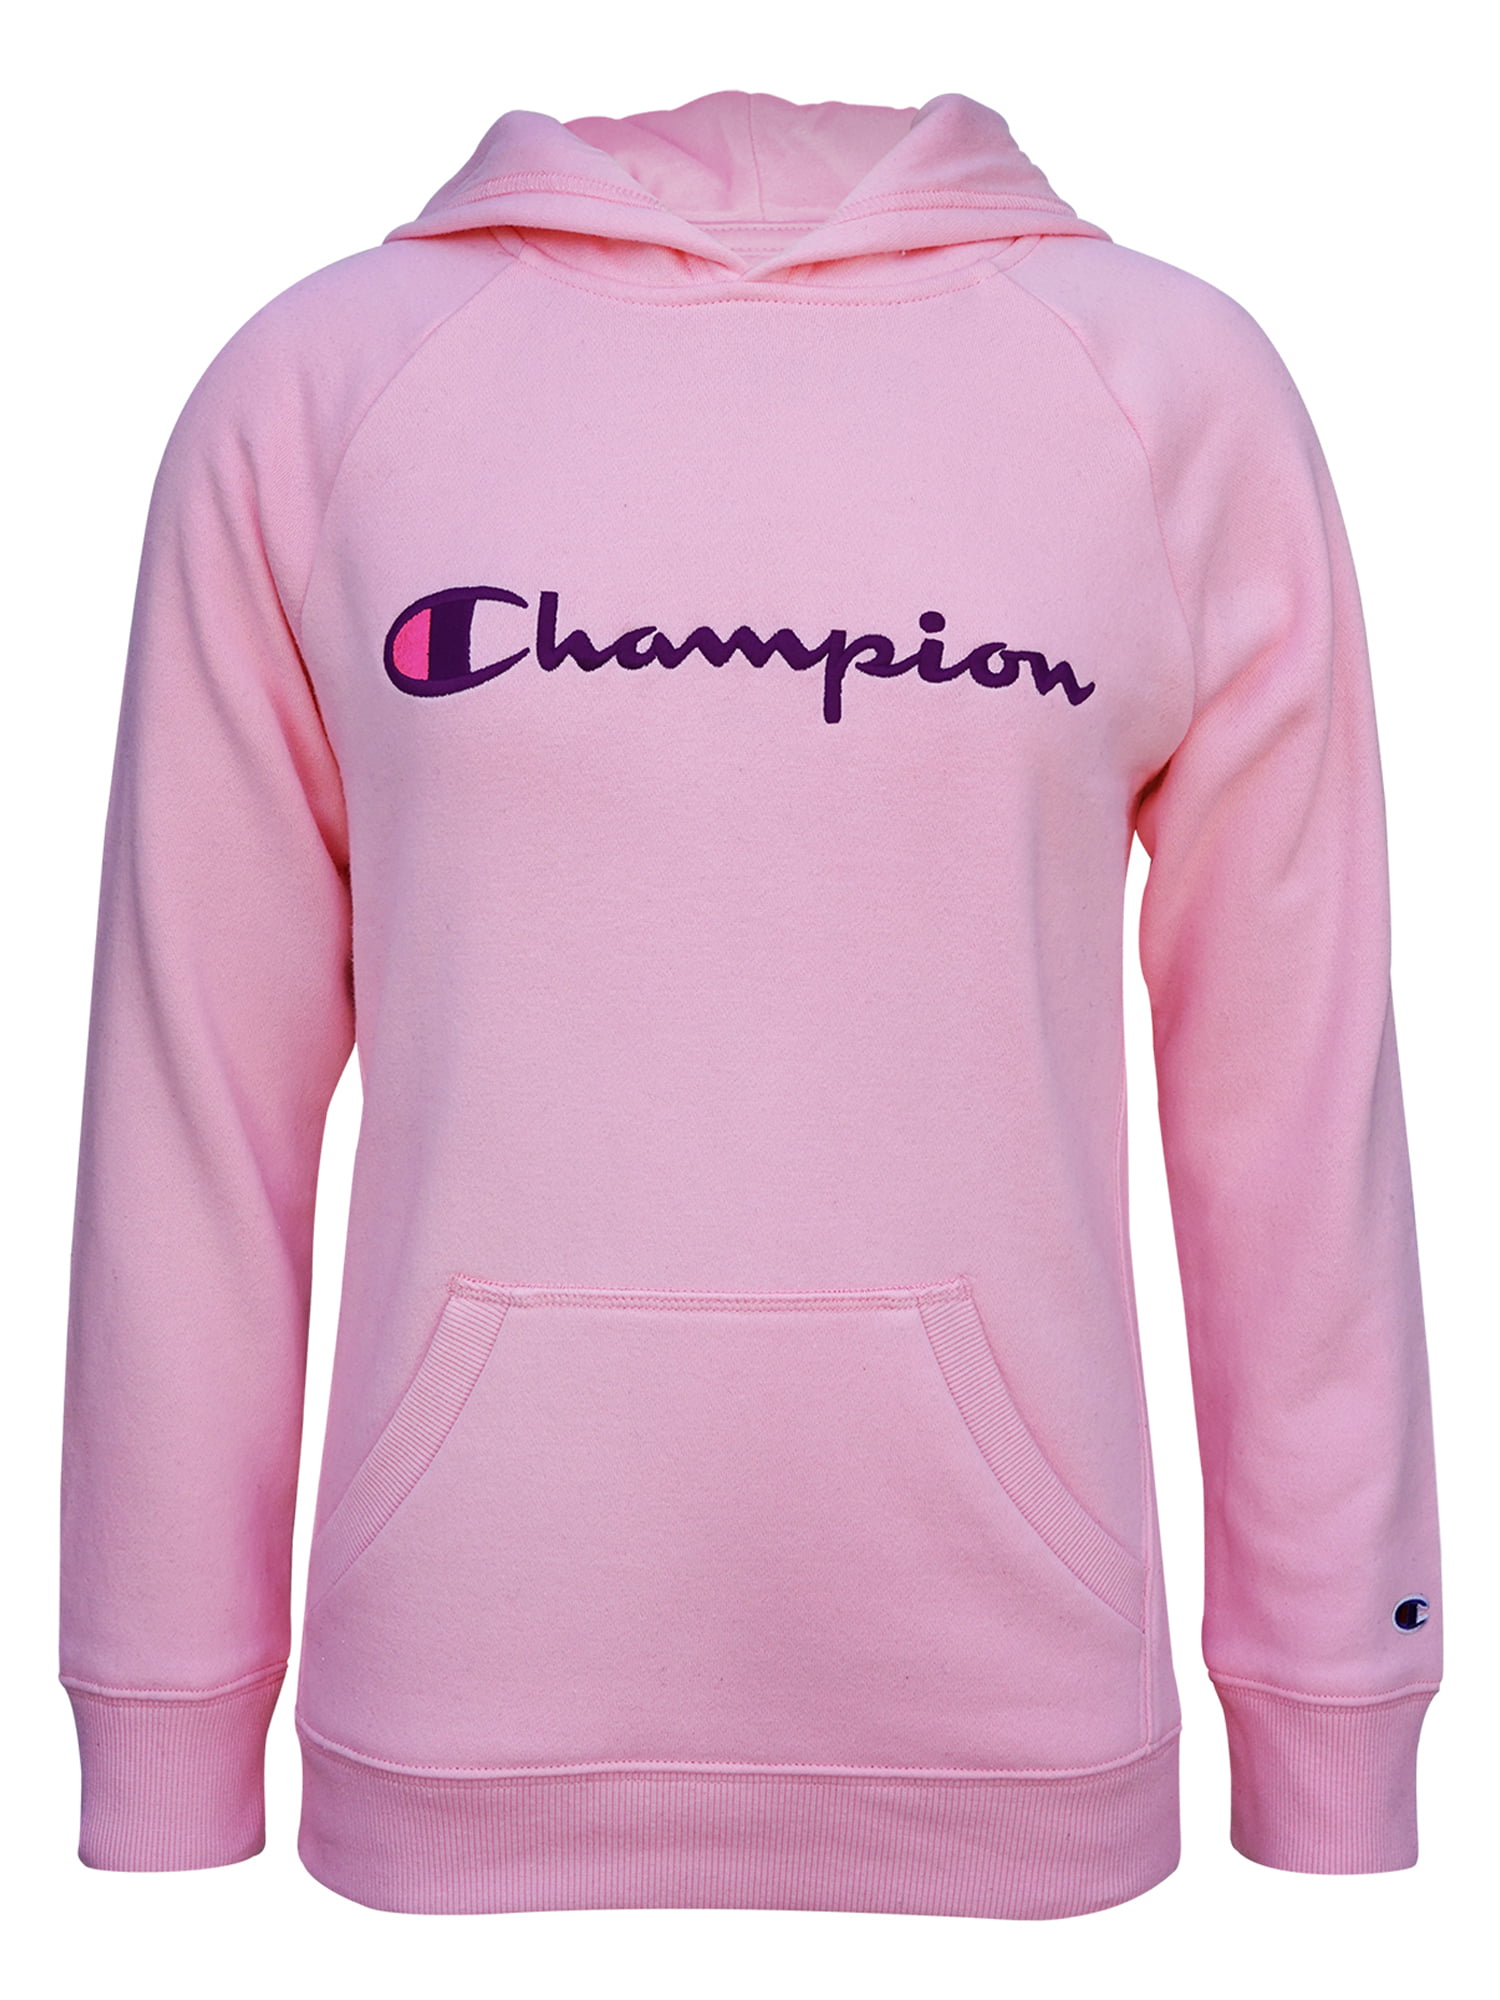 girls champion fleece jacket